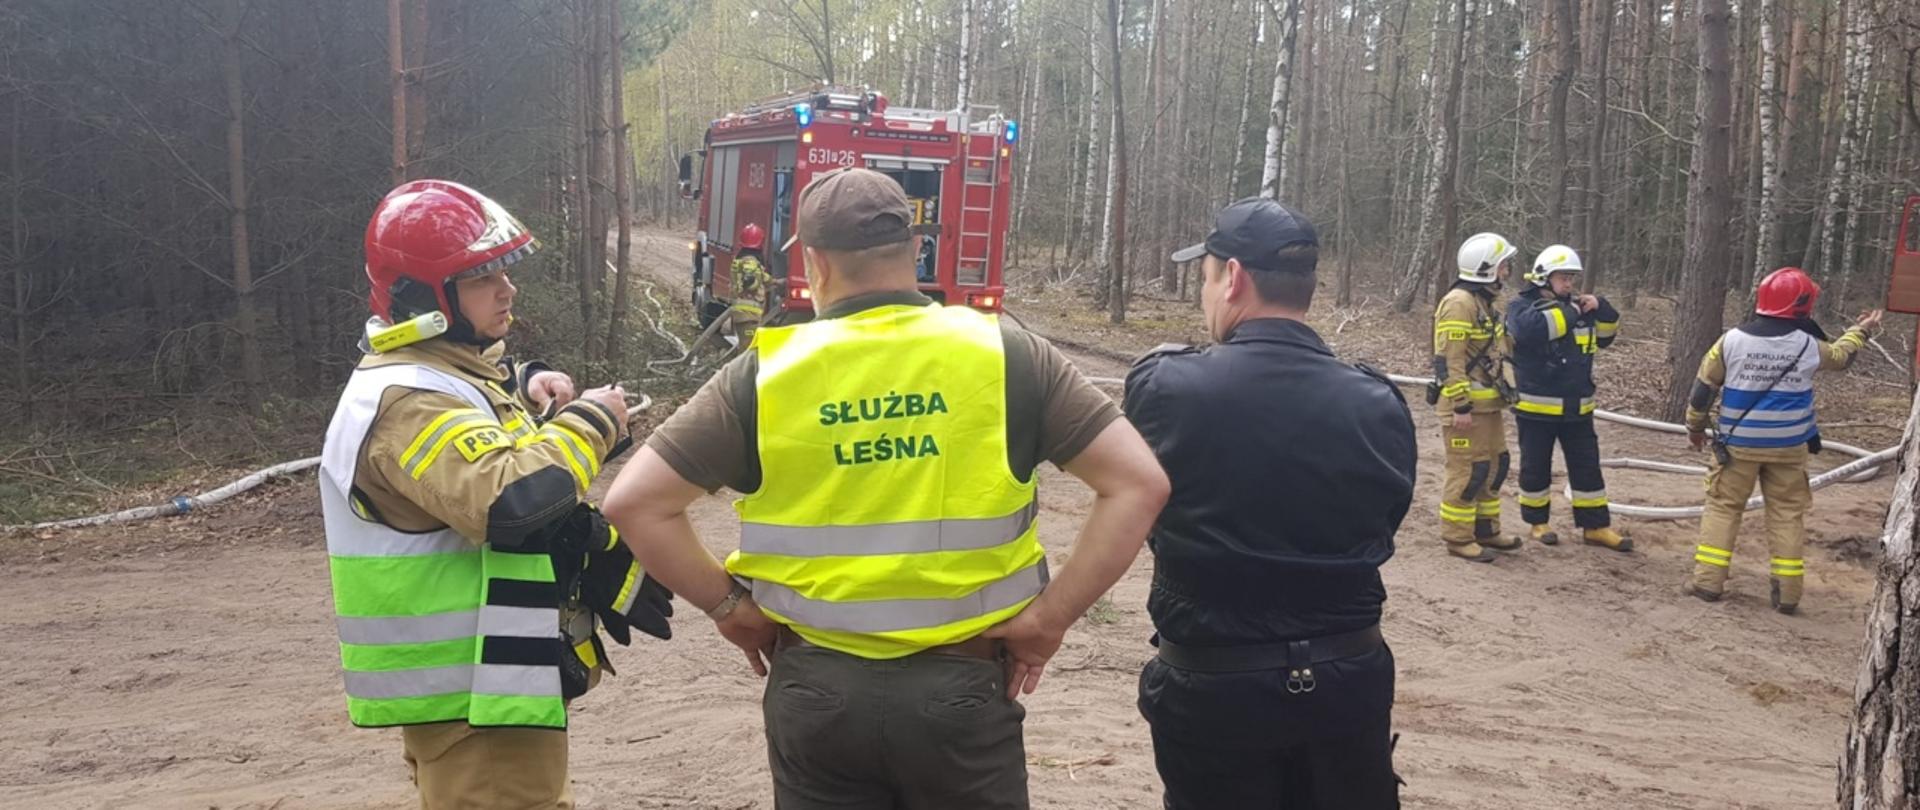 Na zdjęciu widać strażaków oraz przedstawiciela Służby Leśnej 